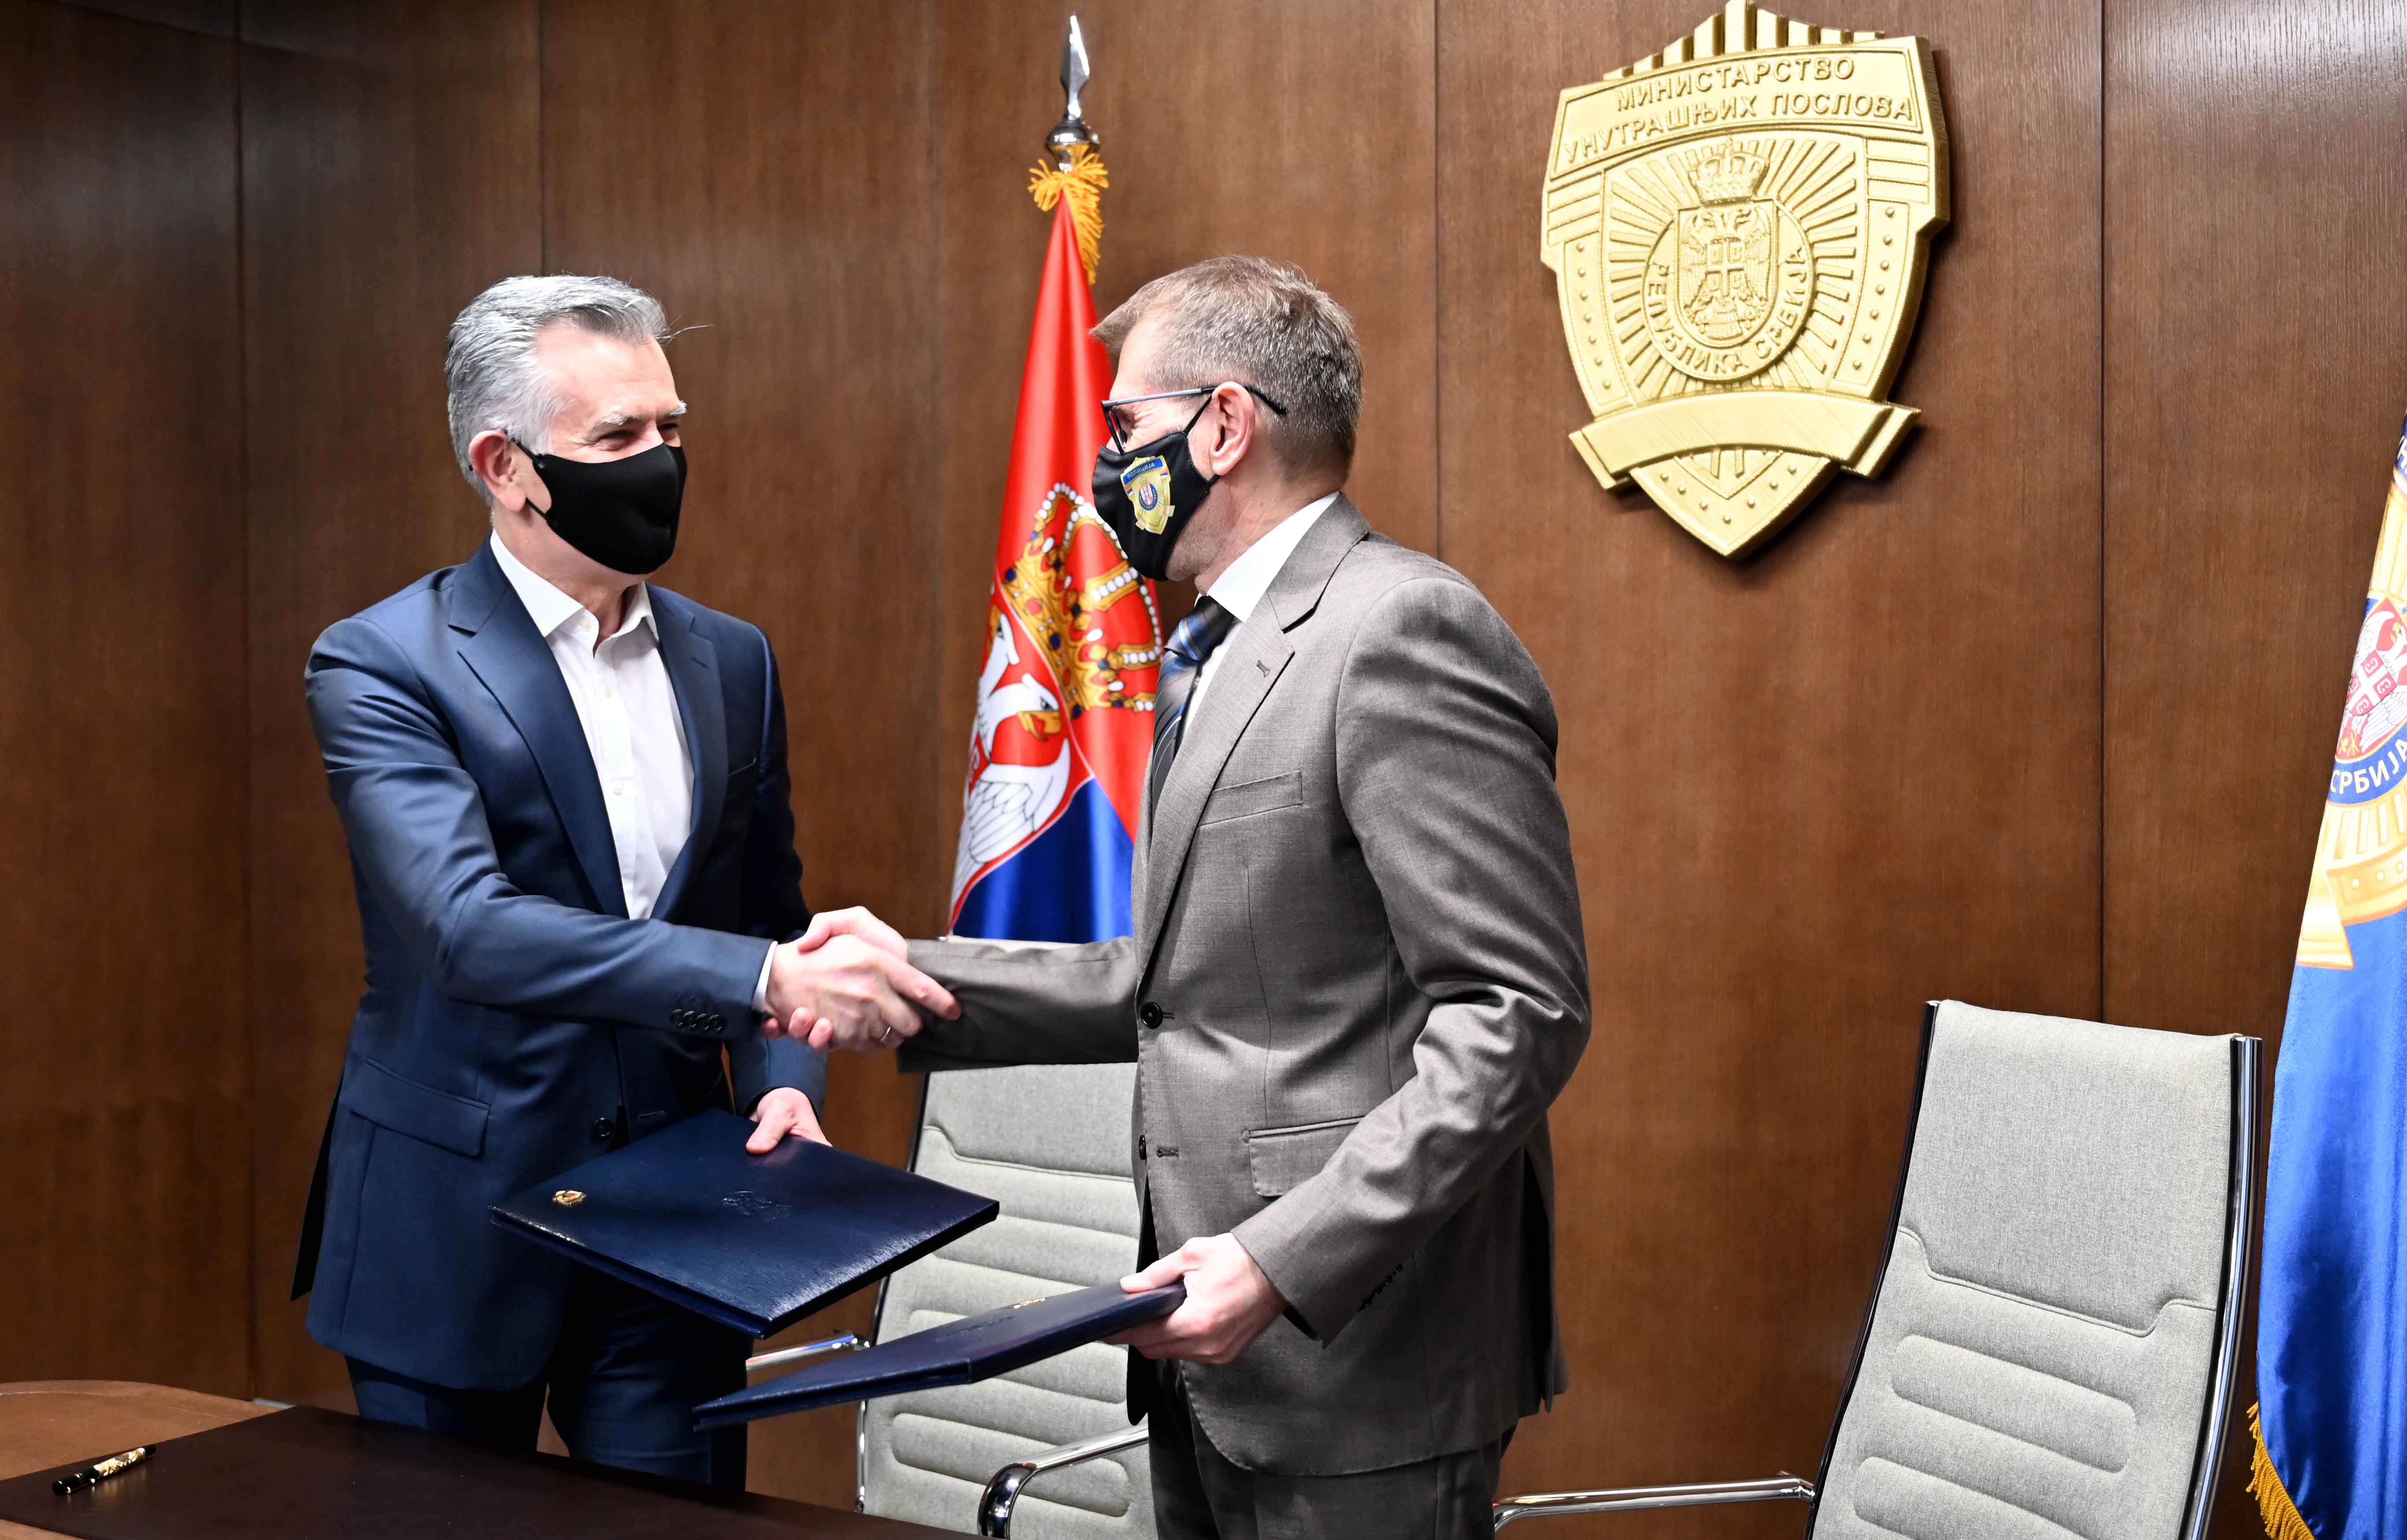 Potpisan Sporazum o saradnji Ministarstva unutrašnjih poslova i Udruženja osiguravača Srbije